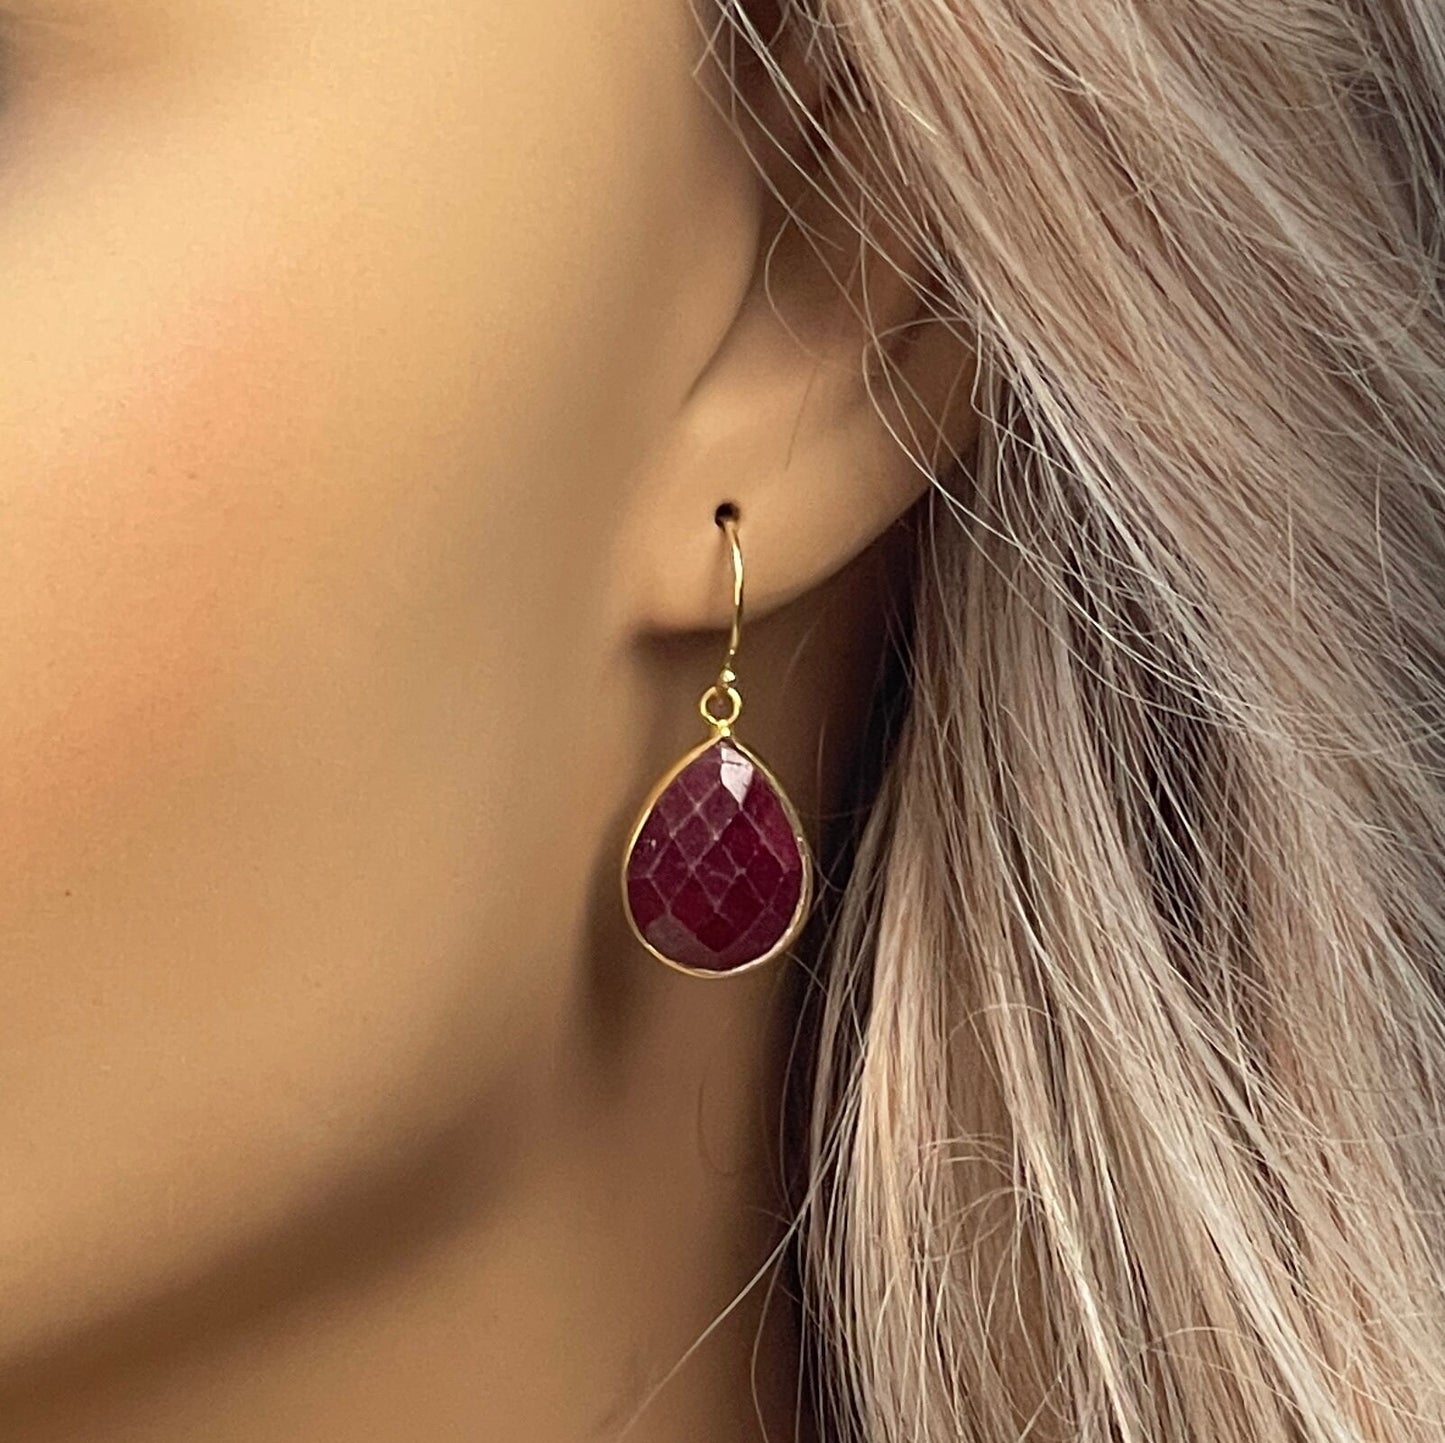 Teardrop Ruby Earrings, Gold Bezel Faceted Gemstones, Raw Genuine Ruby Red Dark Pink, M6-158